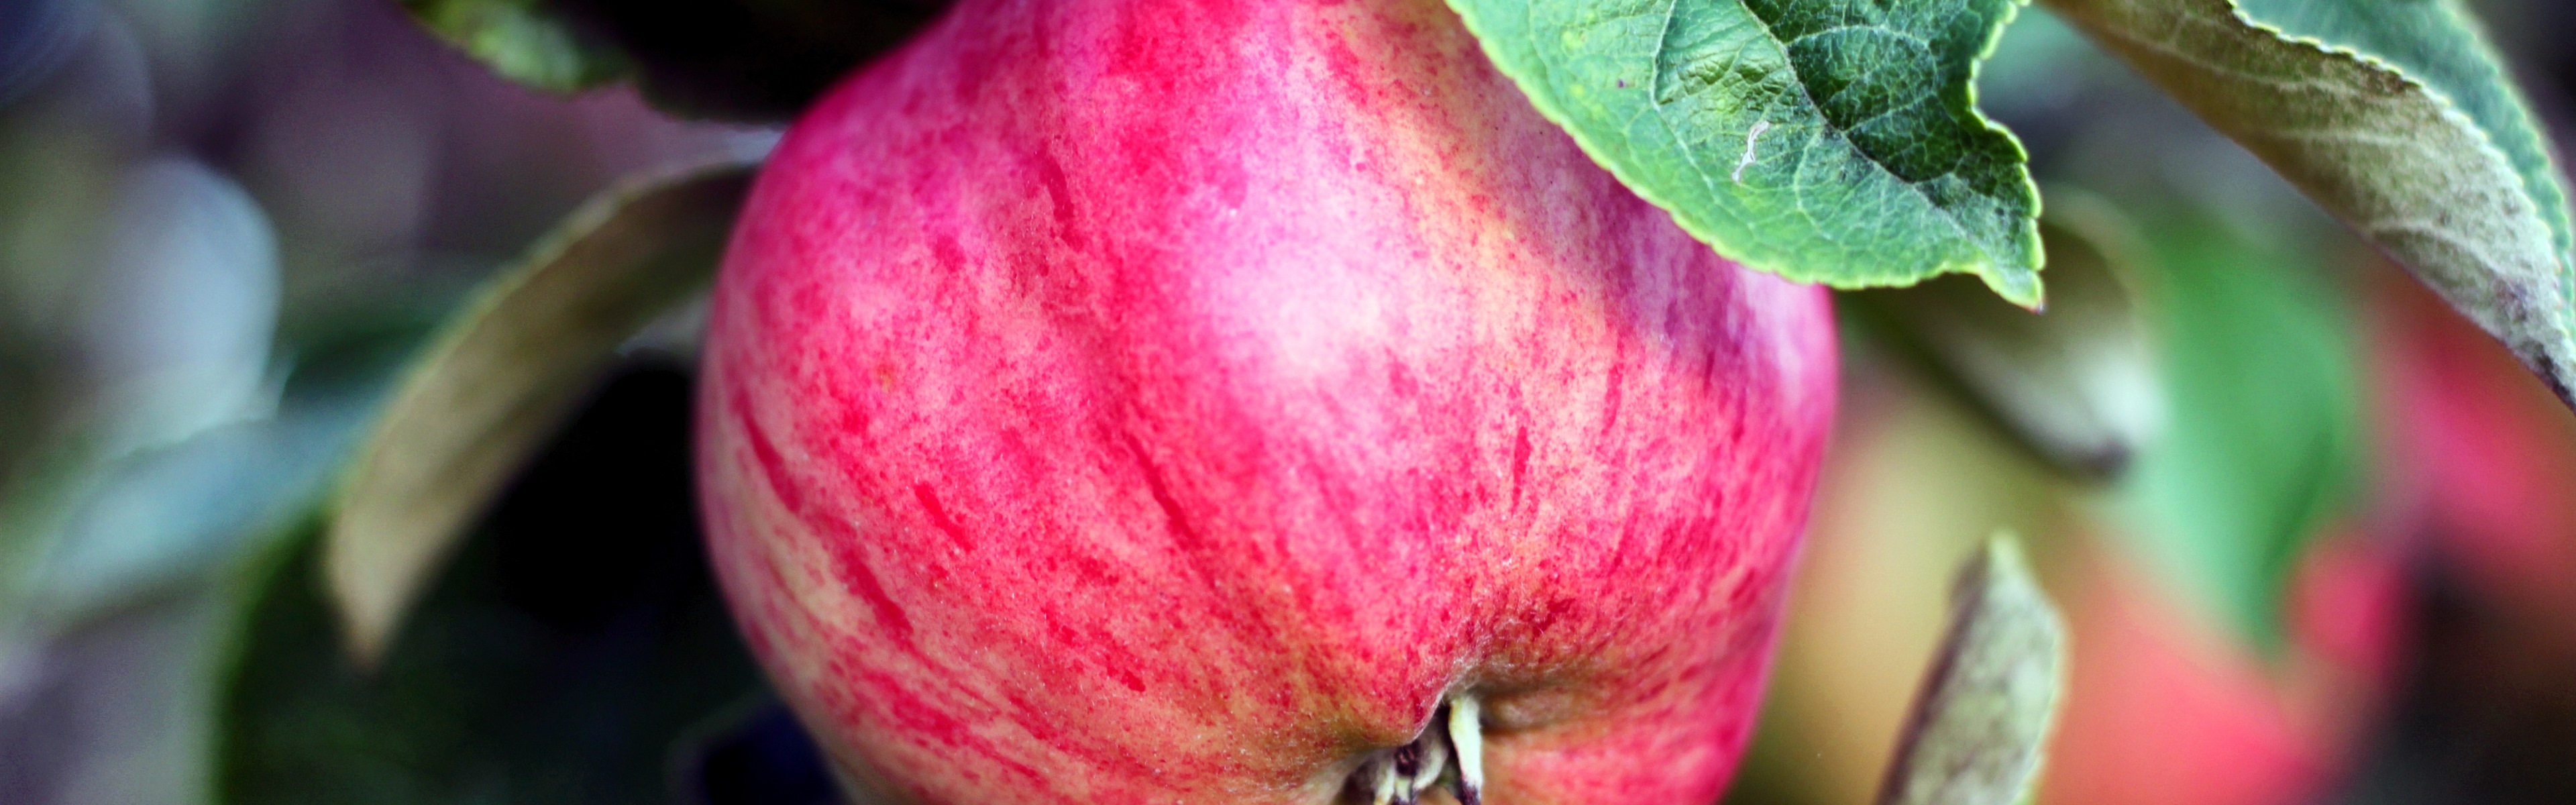 Яблоня с белбелорозовыми плодами